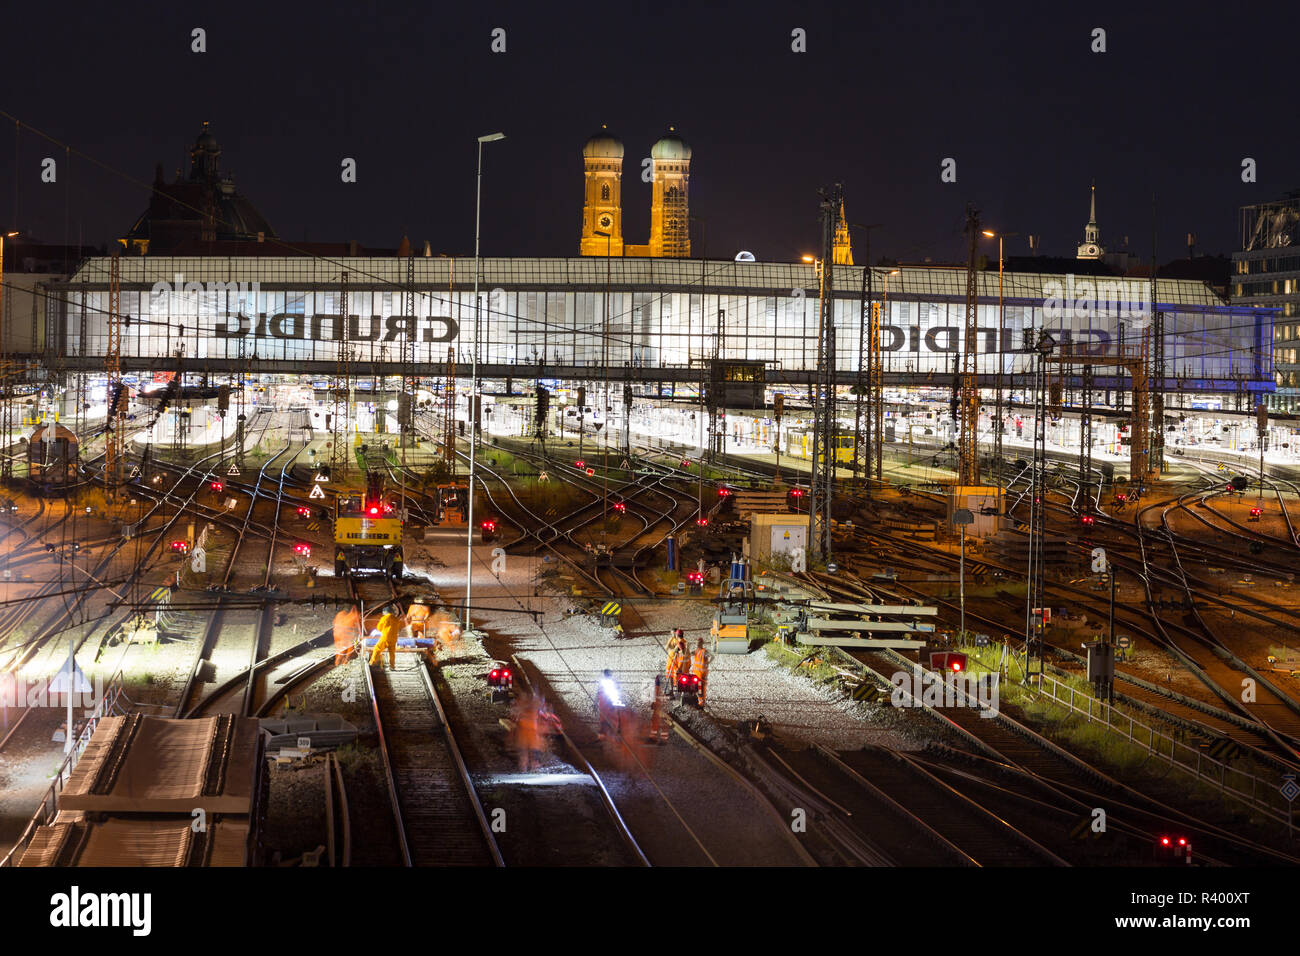 Estación central con pistas iluminadas en la noche, detrás de la Iglesia de Nuestra Señora, Munich, Alemania Foto de stock